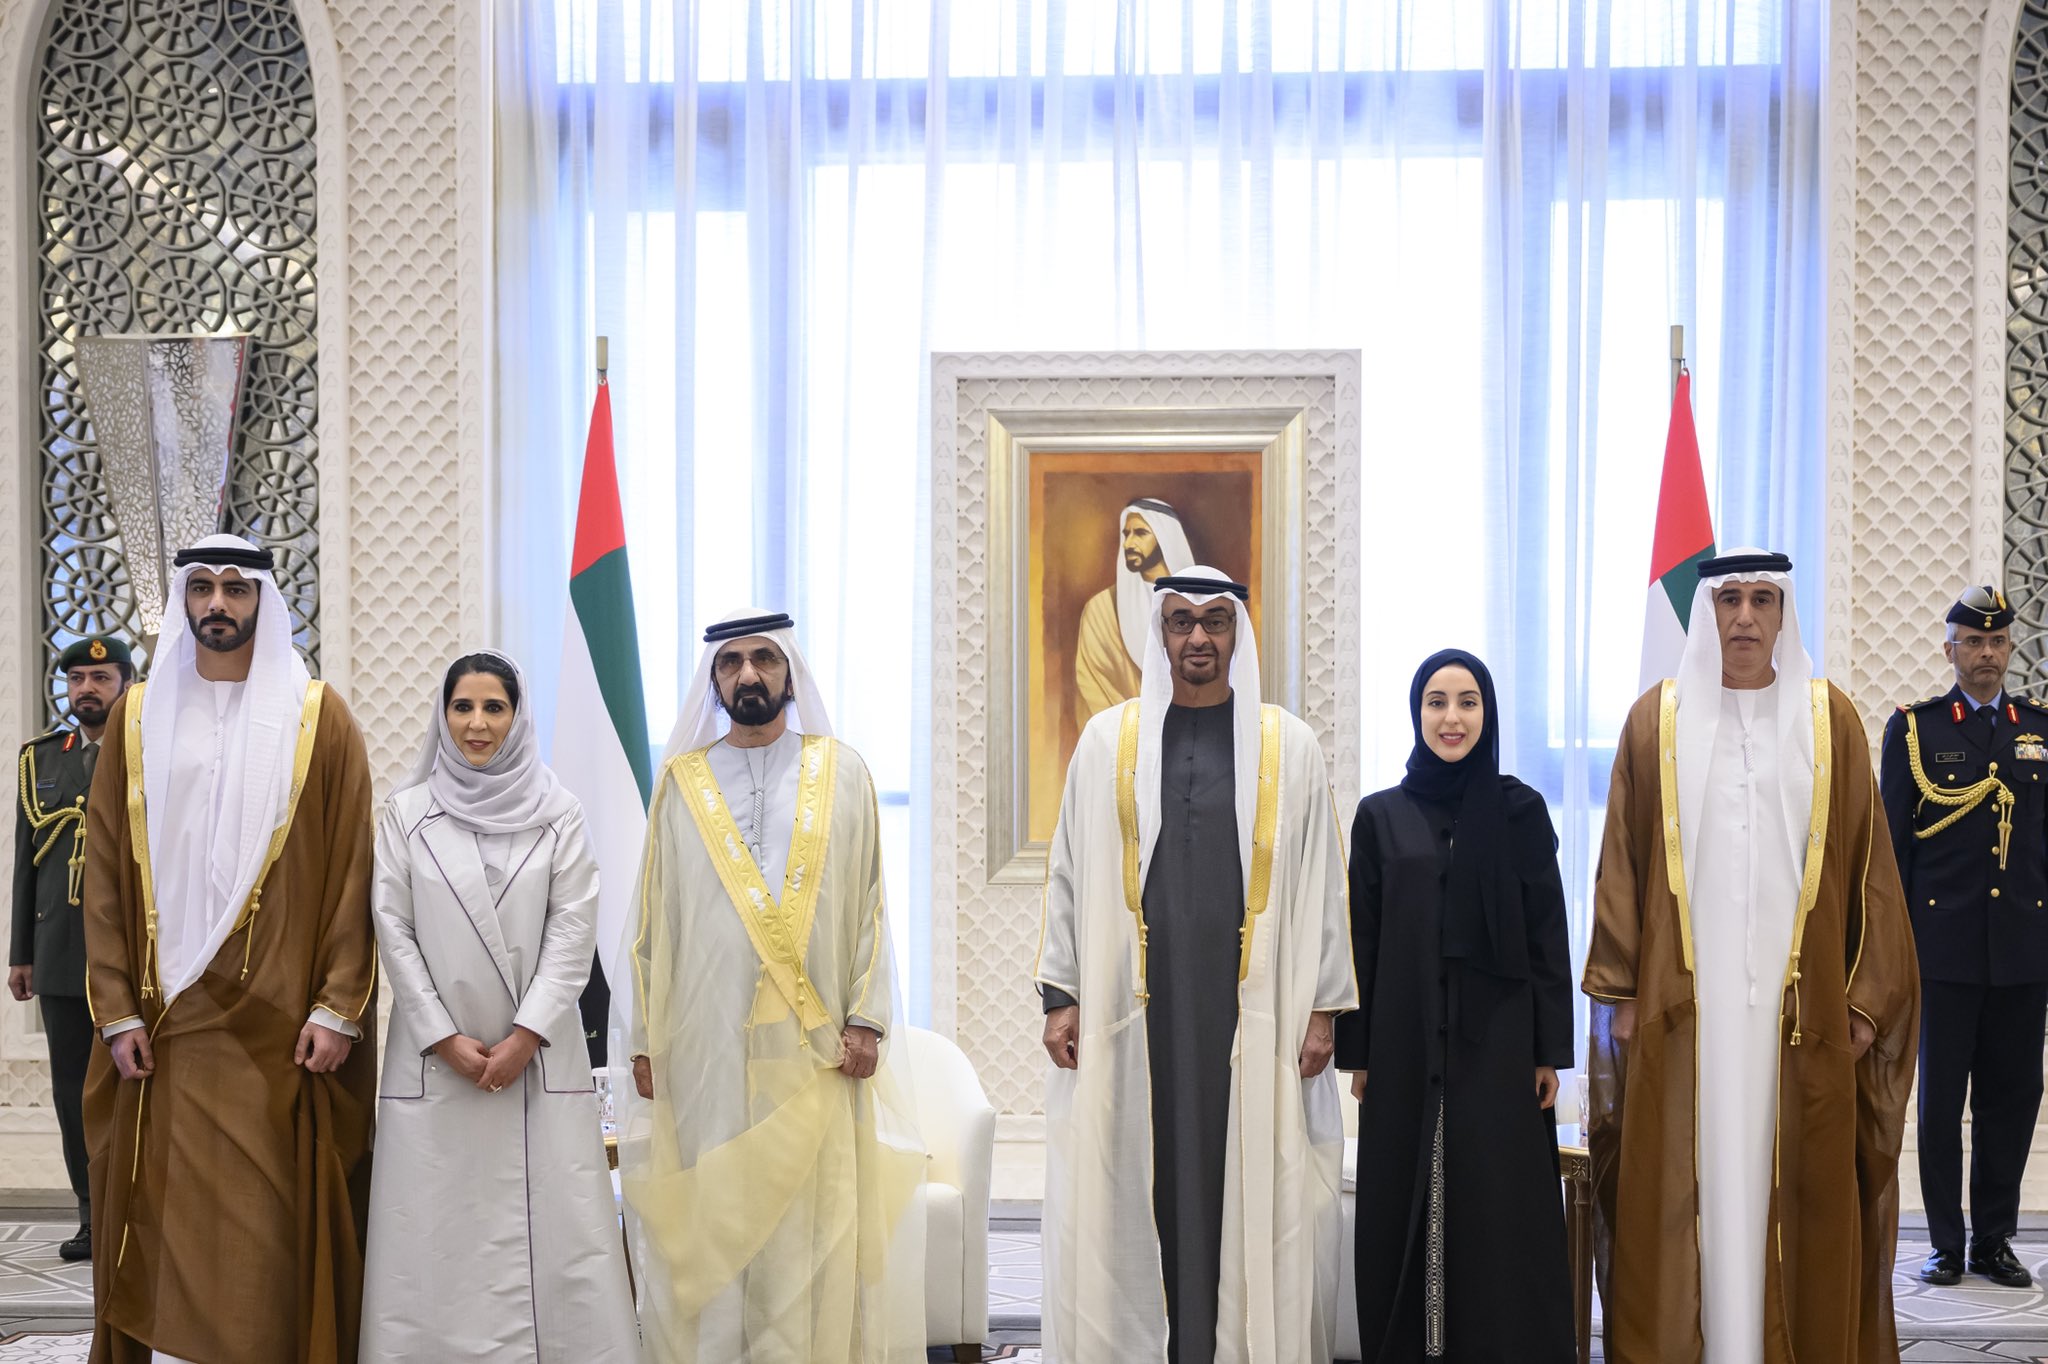 صورة تجمع رئيس الإمارات والوزراء الجدد (تويتر)